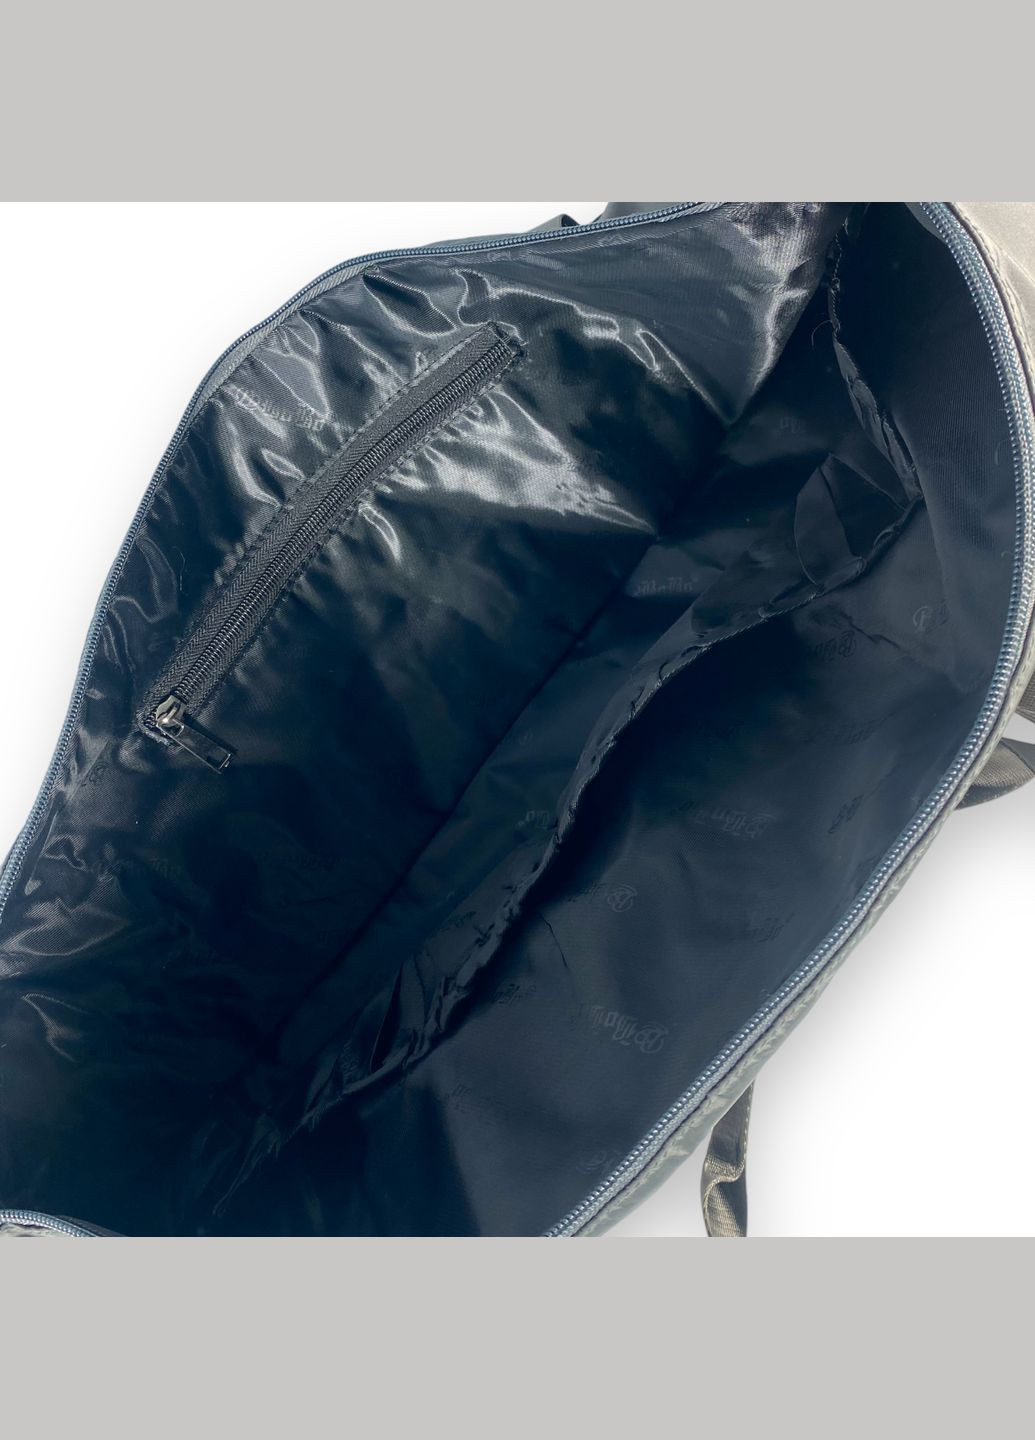 Дорожня сумка, два відділення, дві внутрішні кишені, фронтальна кишеня, розмір 47*35*25 см, сірозелений Bobo (266911502)